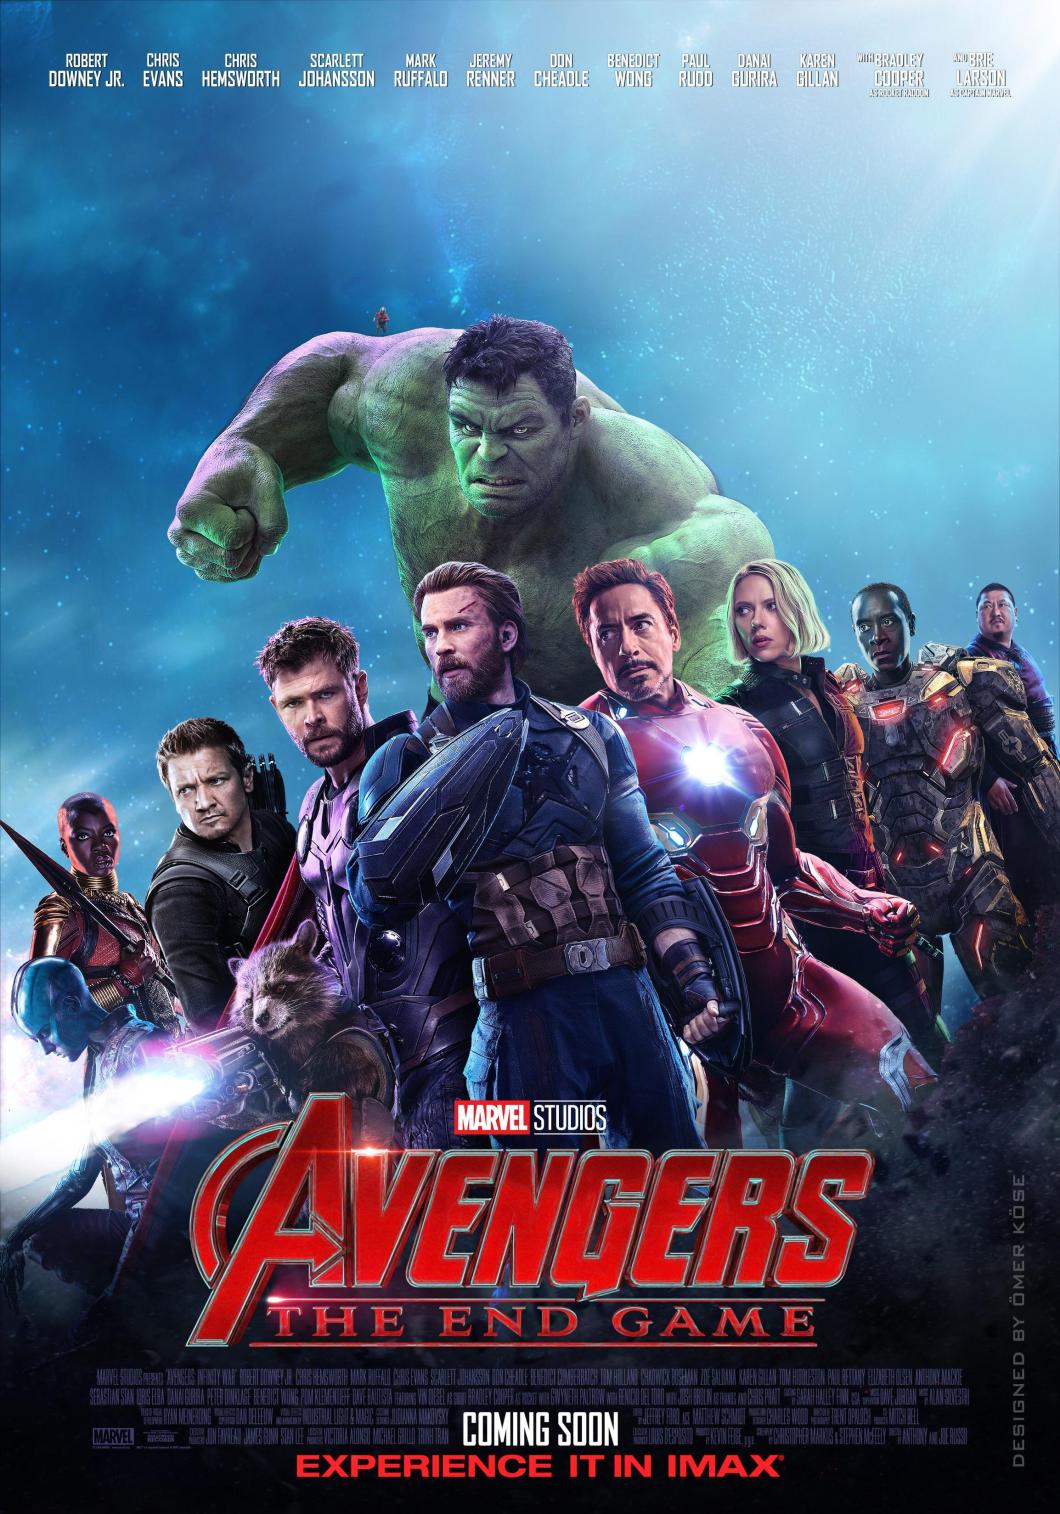 4k Marvel Studios Avengers Endgame Wallpaper iPhone, Android and Desktop!